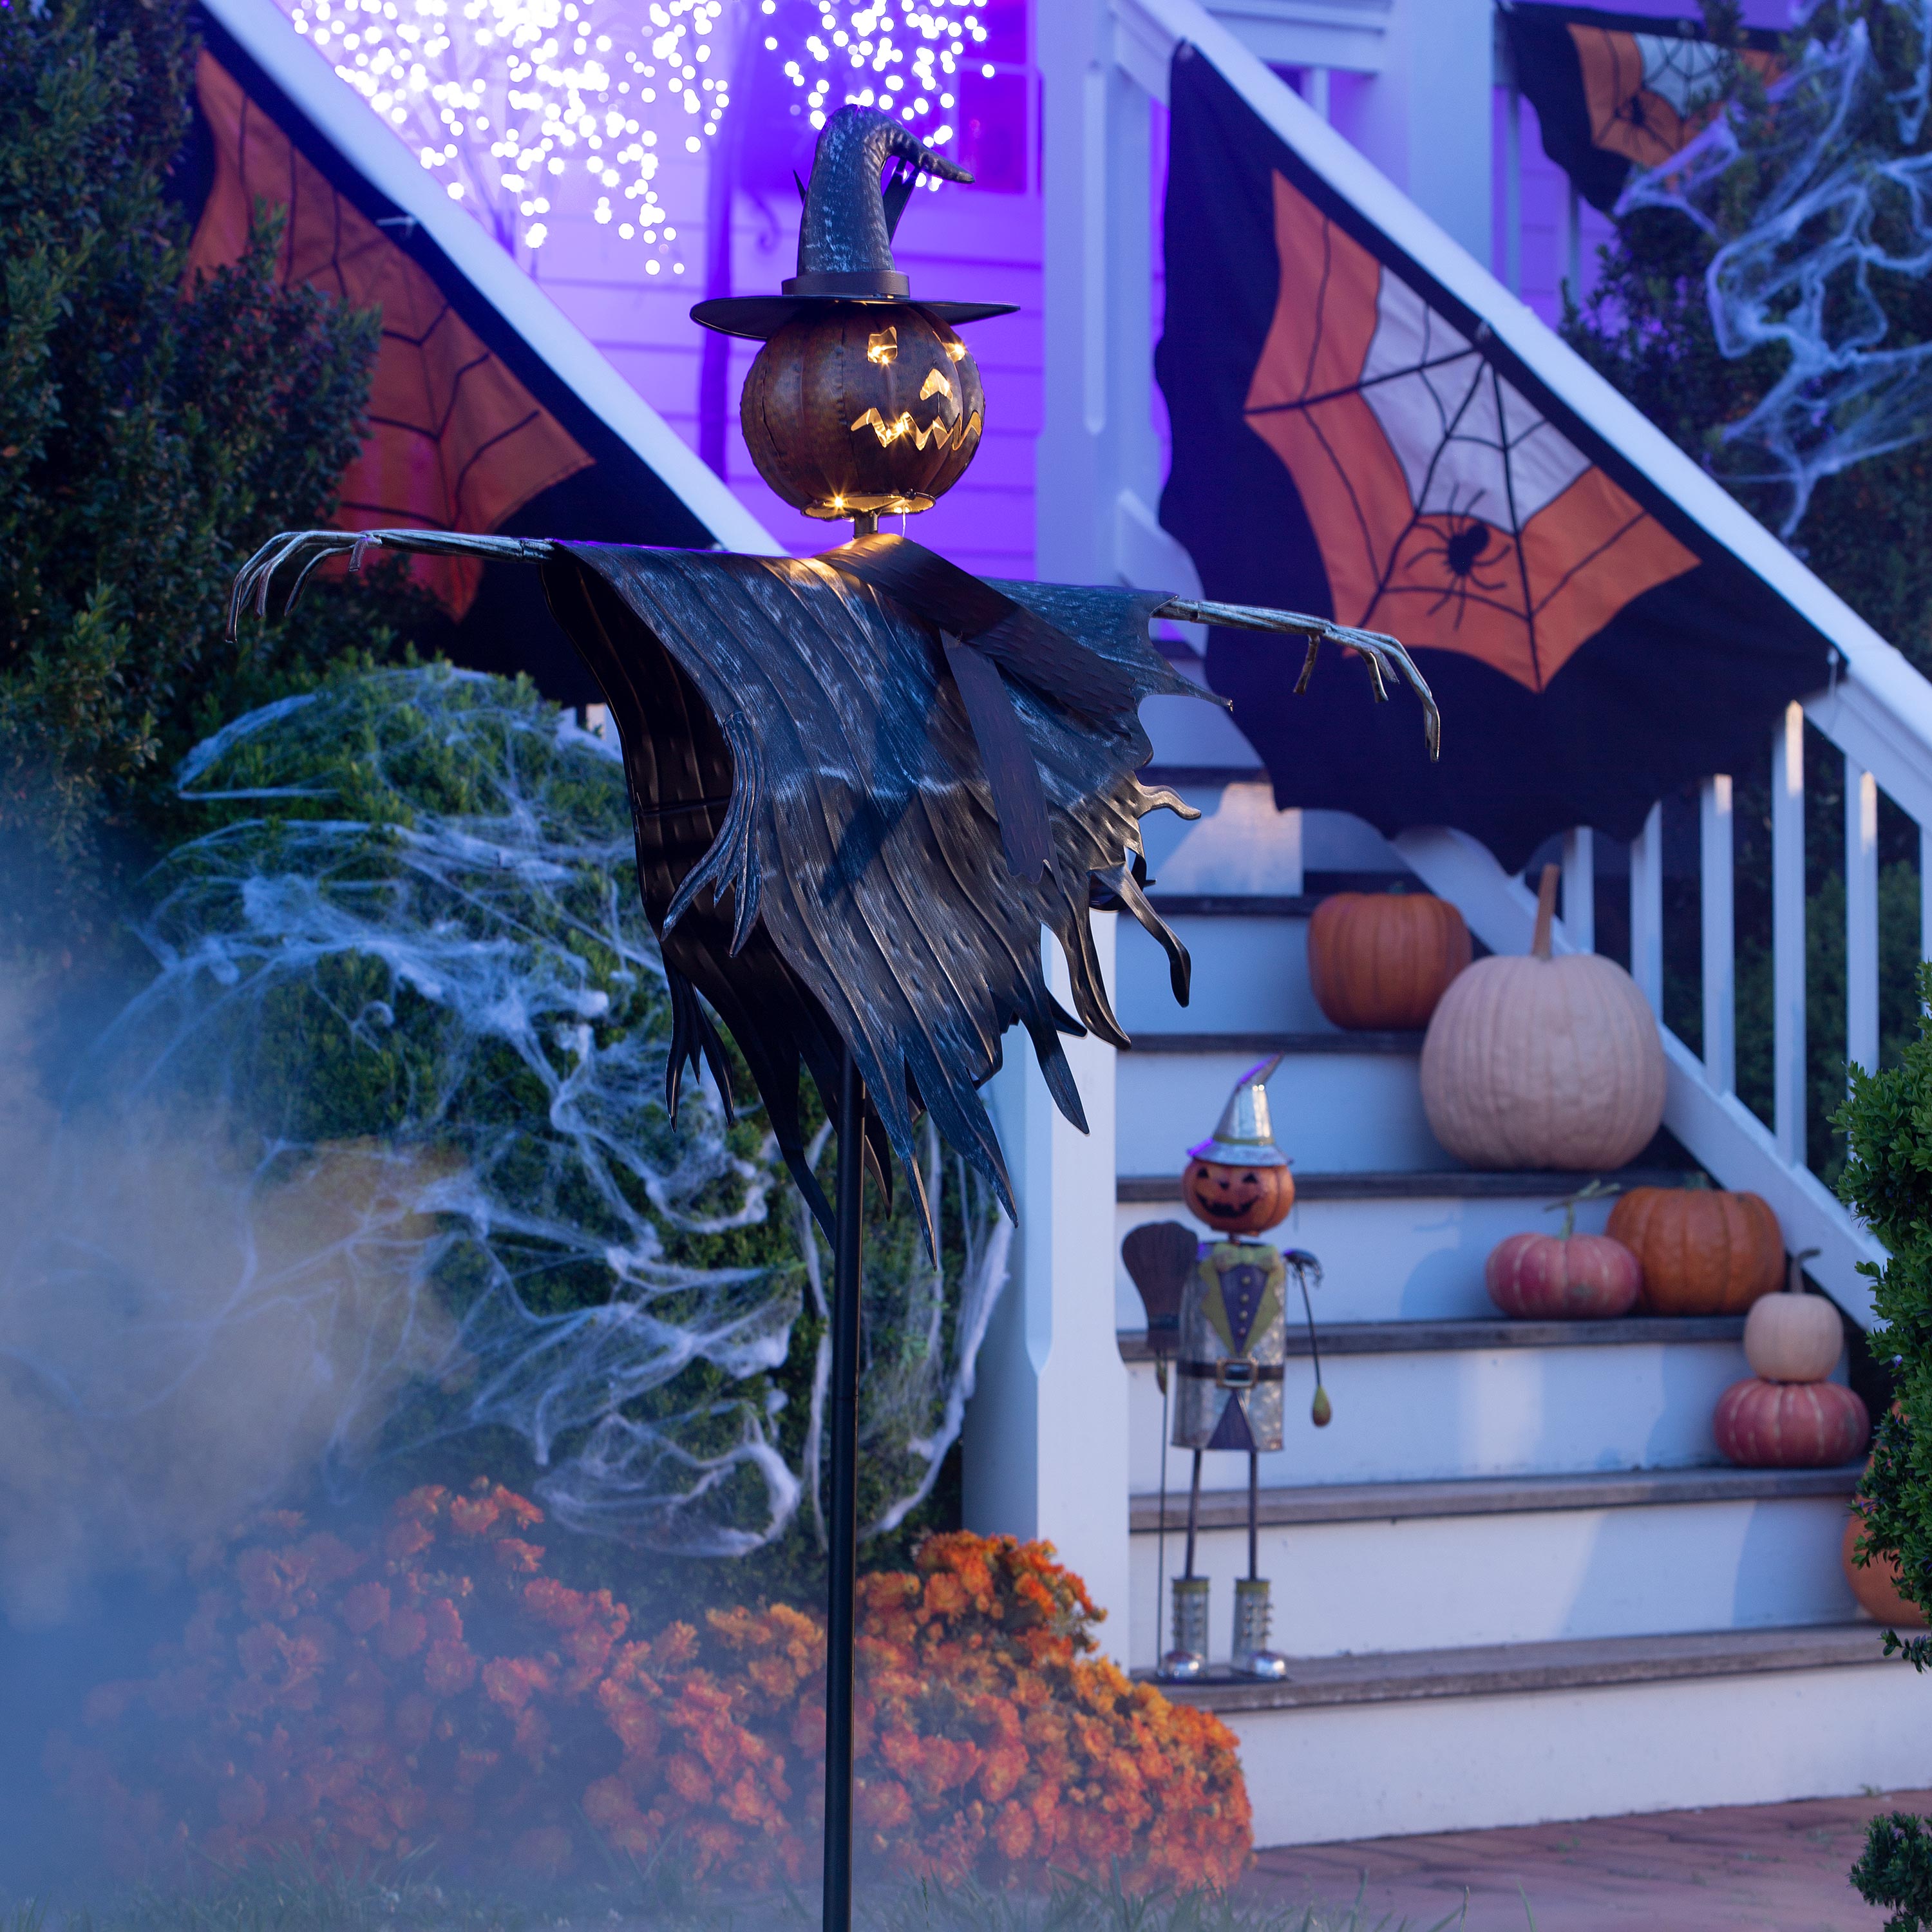 Halloween Solar Scarecrow Jack O' Lantern Metal Ground Stake